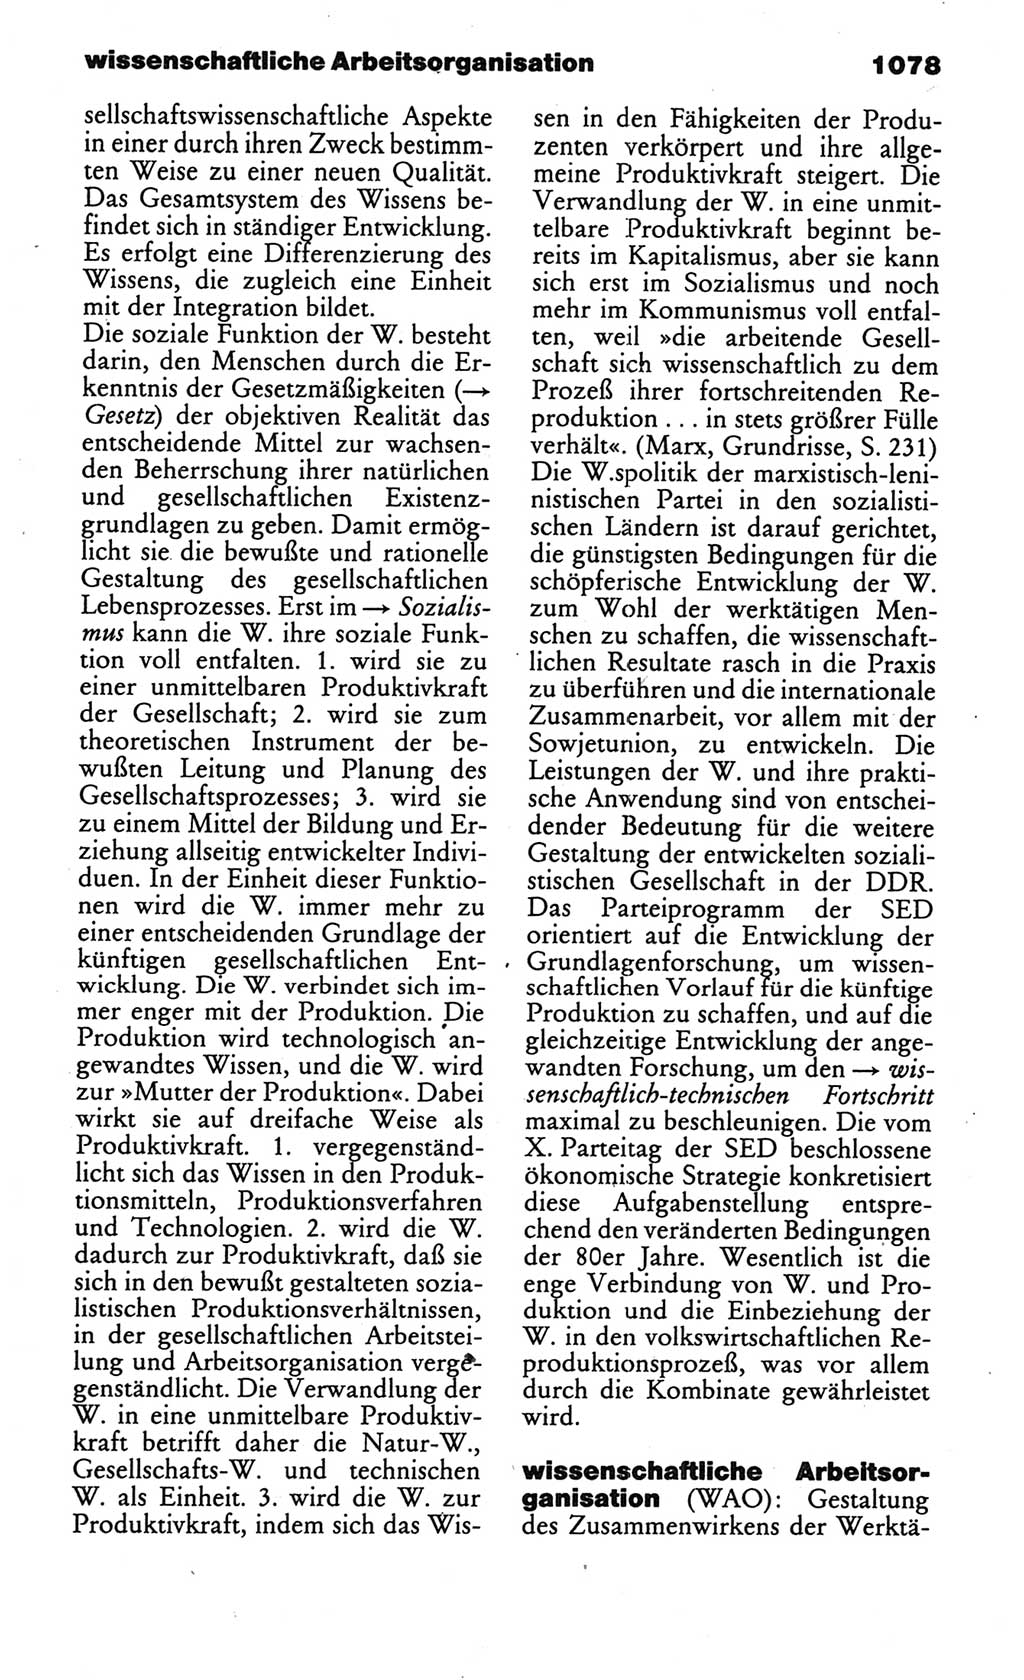 Kleines politisches Wörterbuch [Deutsche Demokratische Republik (DDR)] 1986, Seite 1078 (Kl. pol. Wb. DDR 1986, S. 1078)